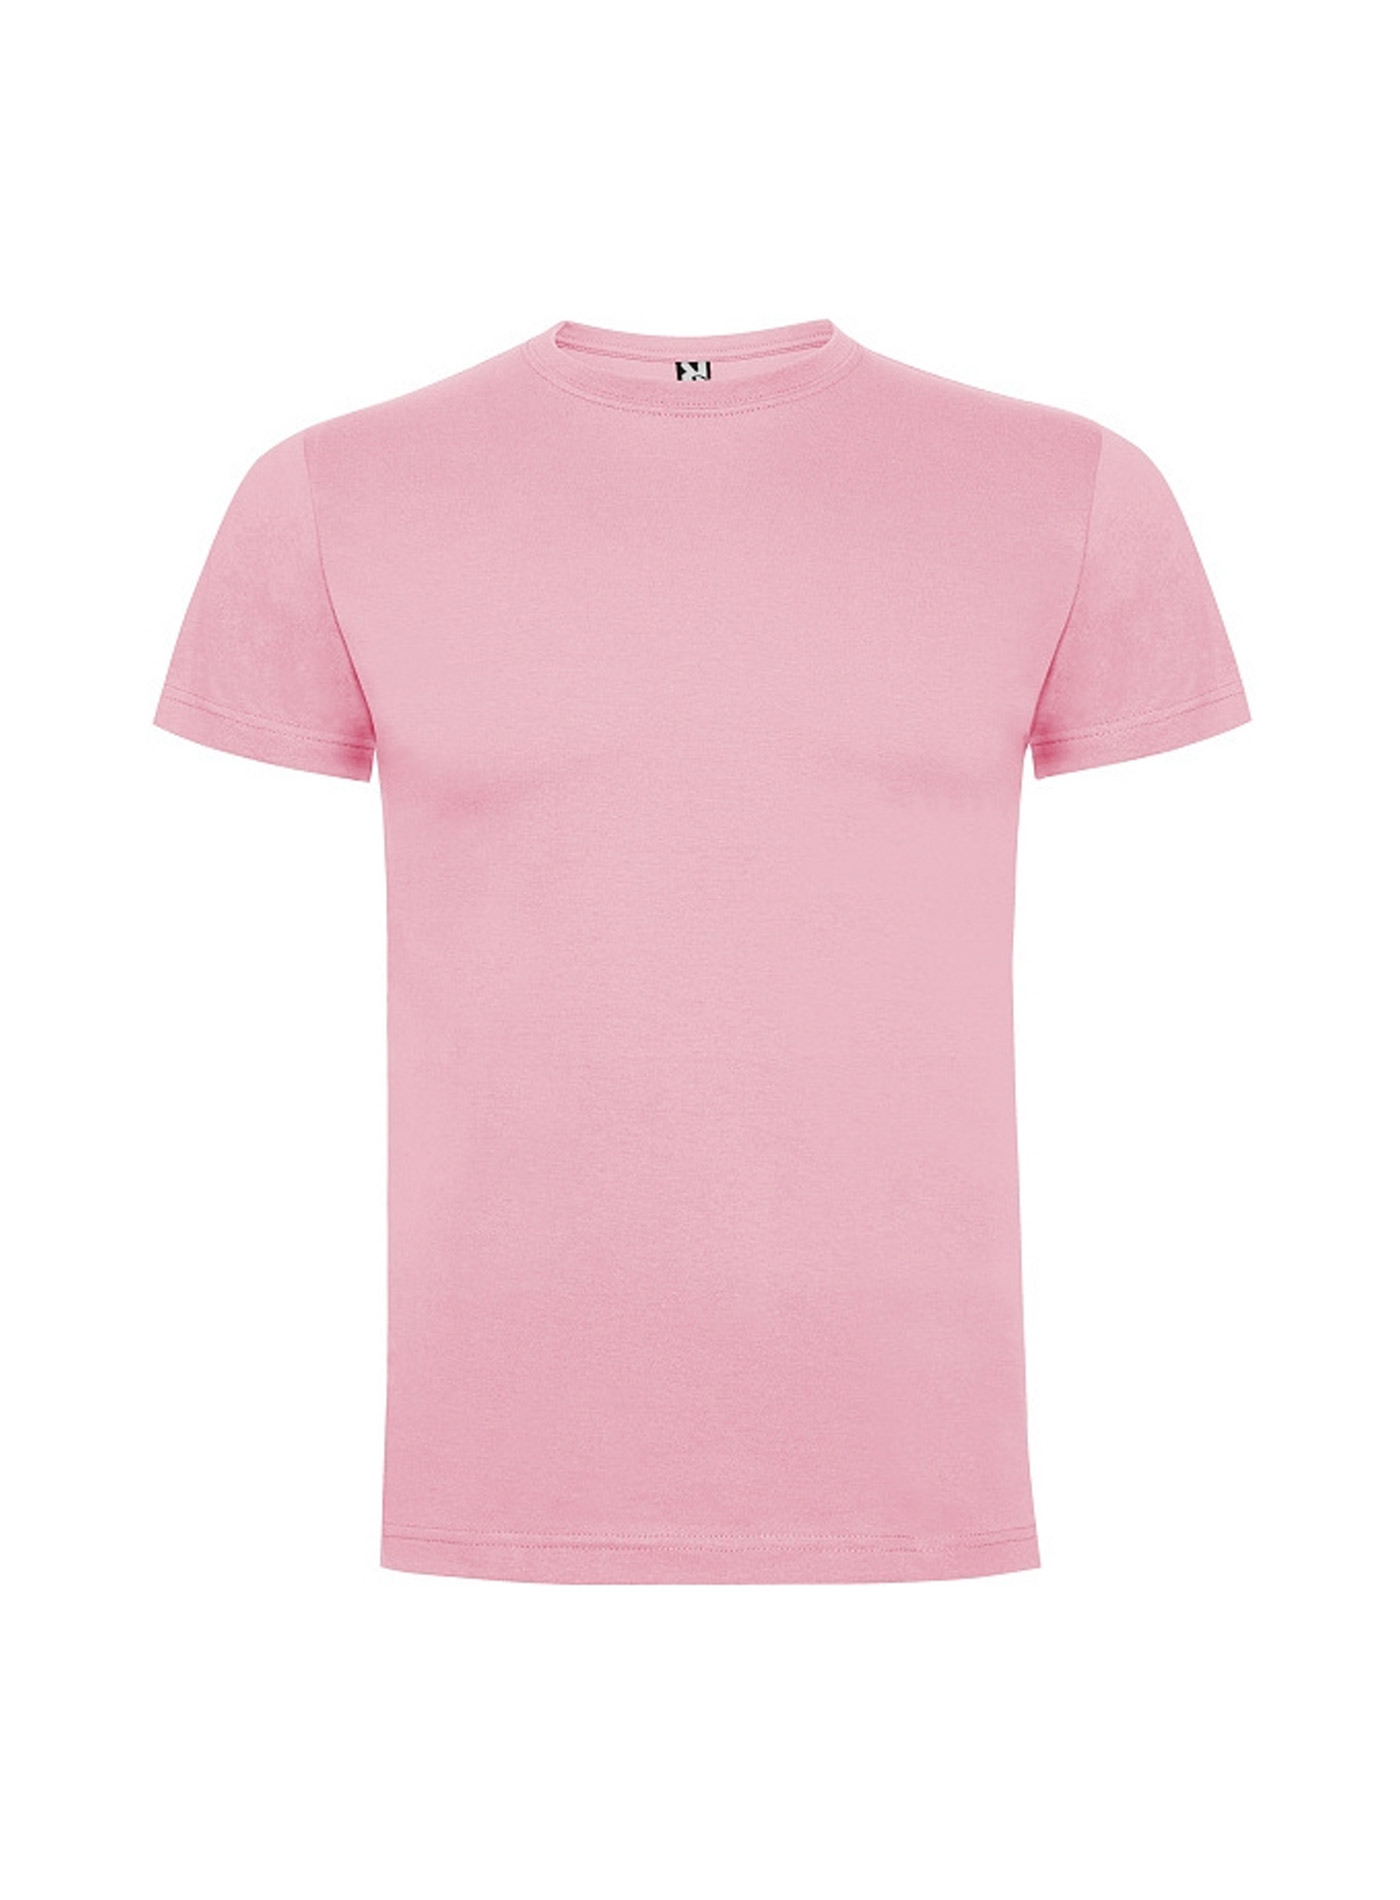 Dětské tričko Roly Dogo premium - Světle růžová 3-4